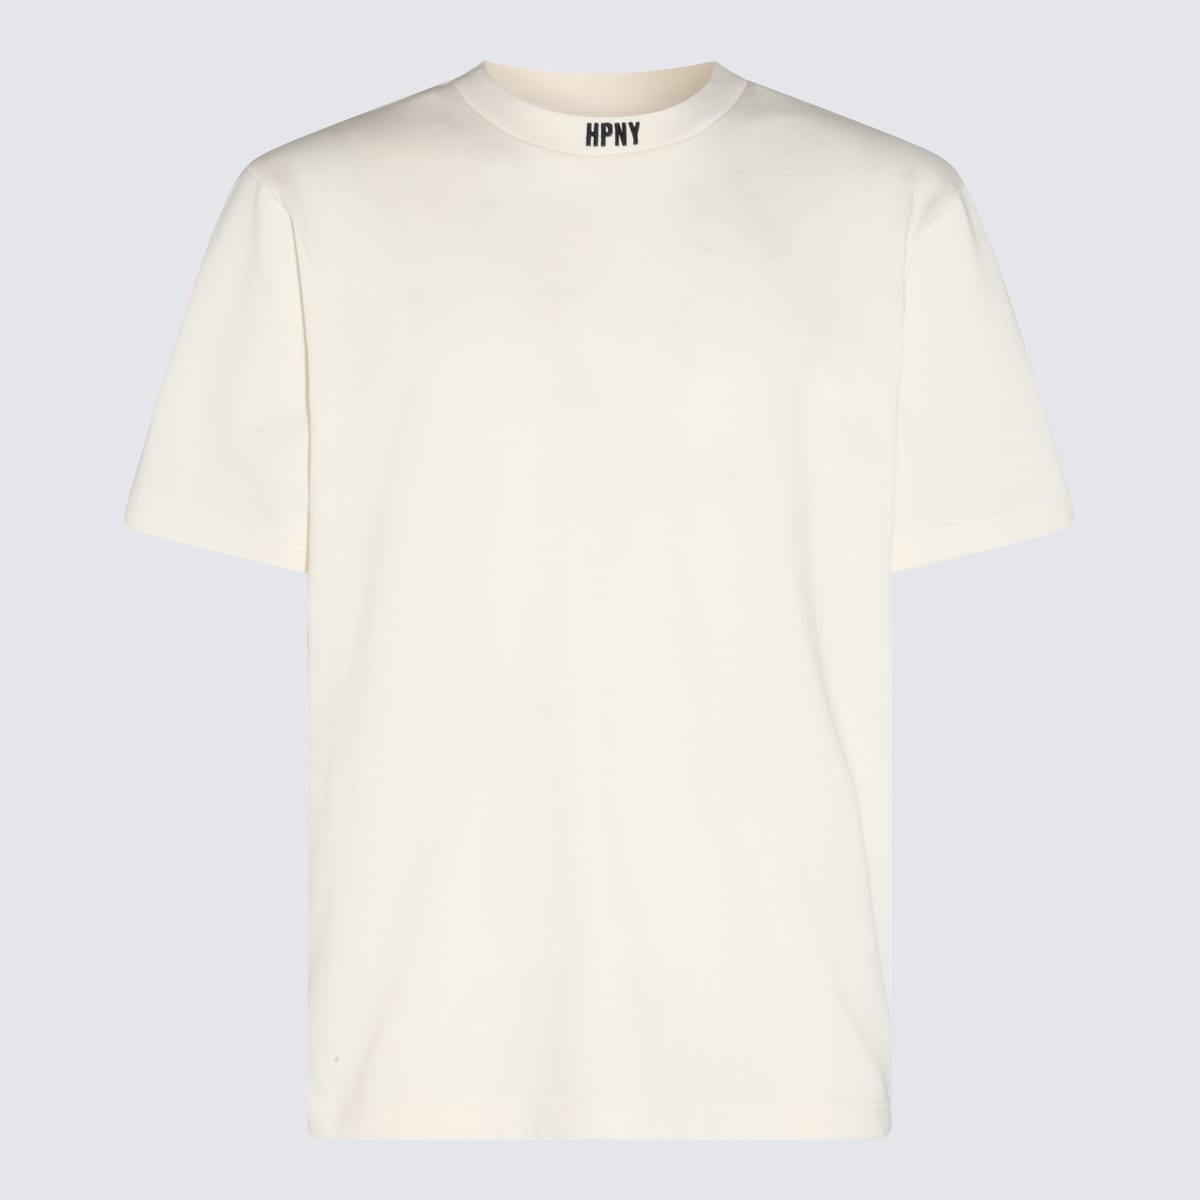 Heron Preston White Cotton T-shirt